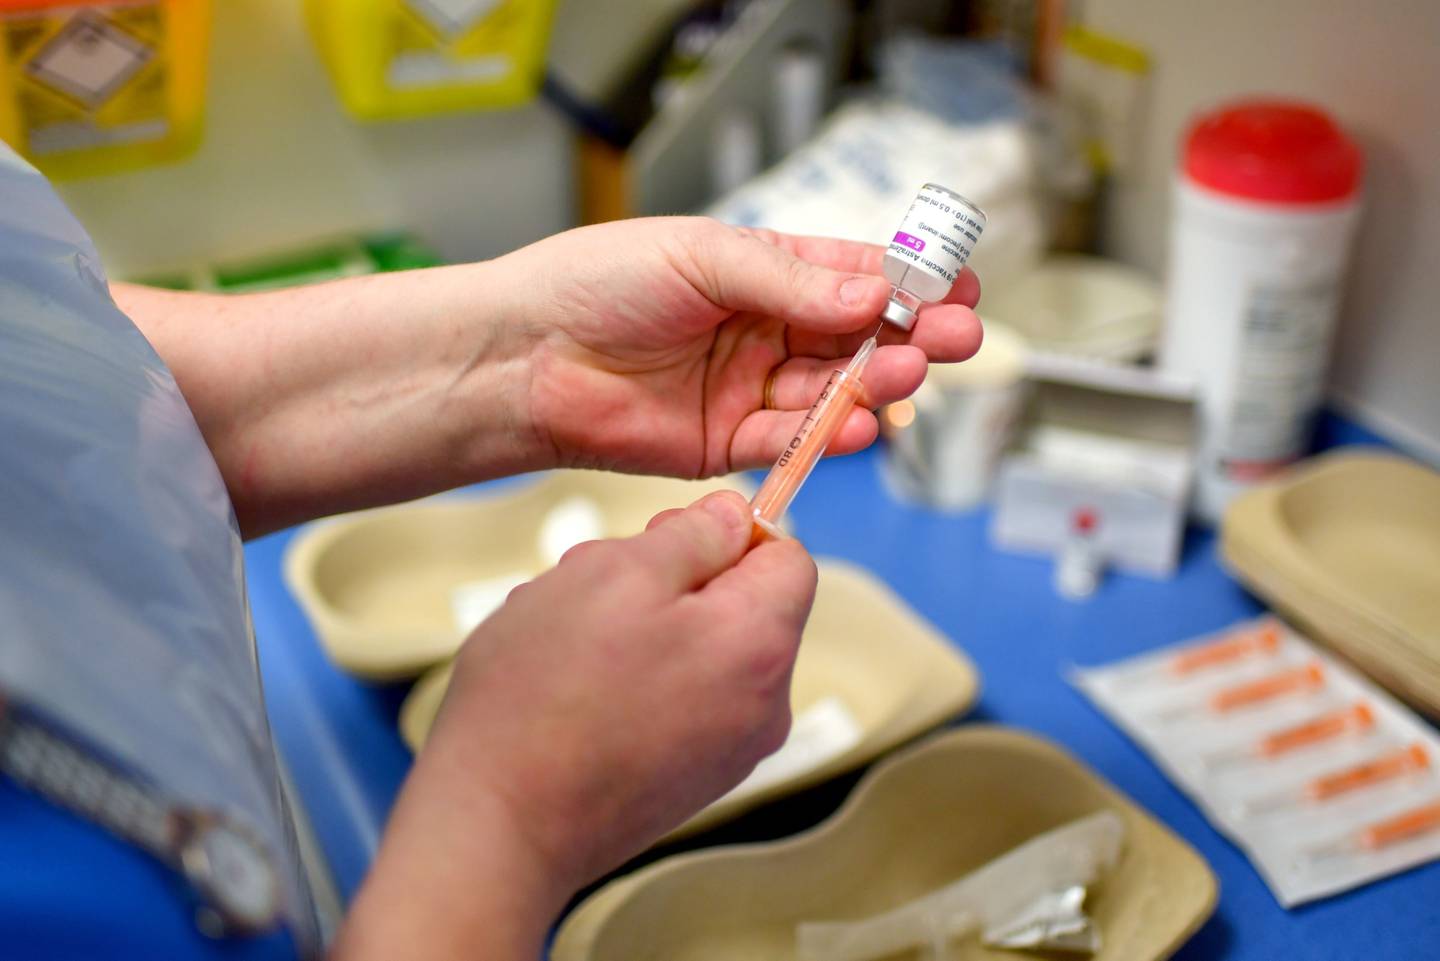 Una enfermera introduce una dosis de la vacuna contra el Covid-19 de AstraZeneca Plc y la Universidad de Oxford en una jeringa en el Royal Health & Wellbeing Centre de Oldham, Reino Unido, el jueves 21 de enero de 2021.dfd